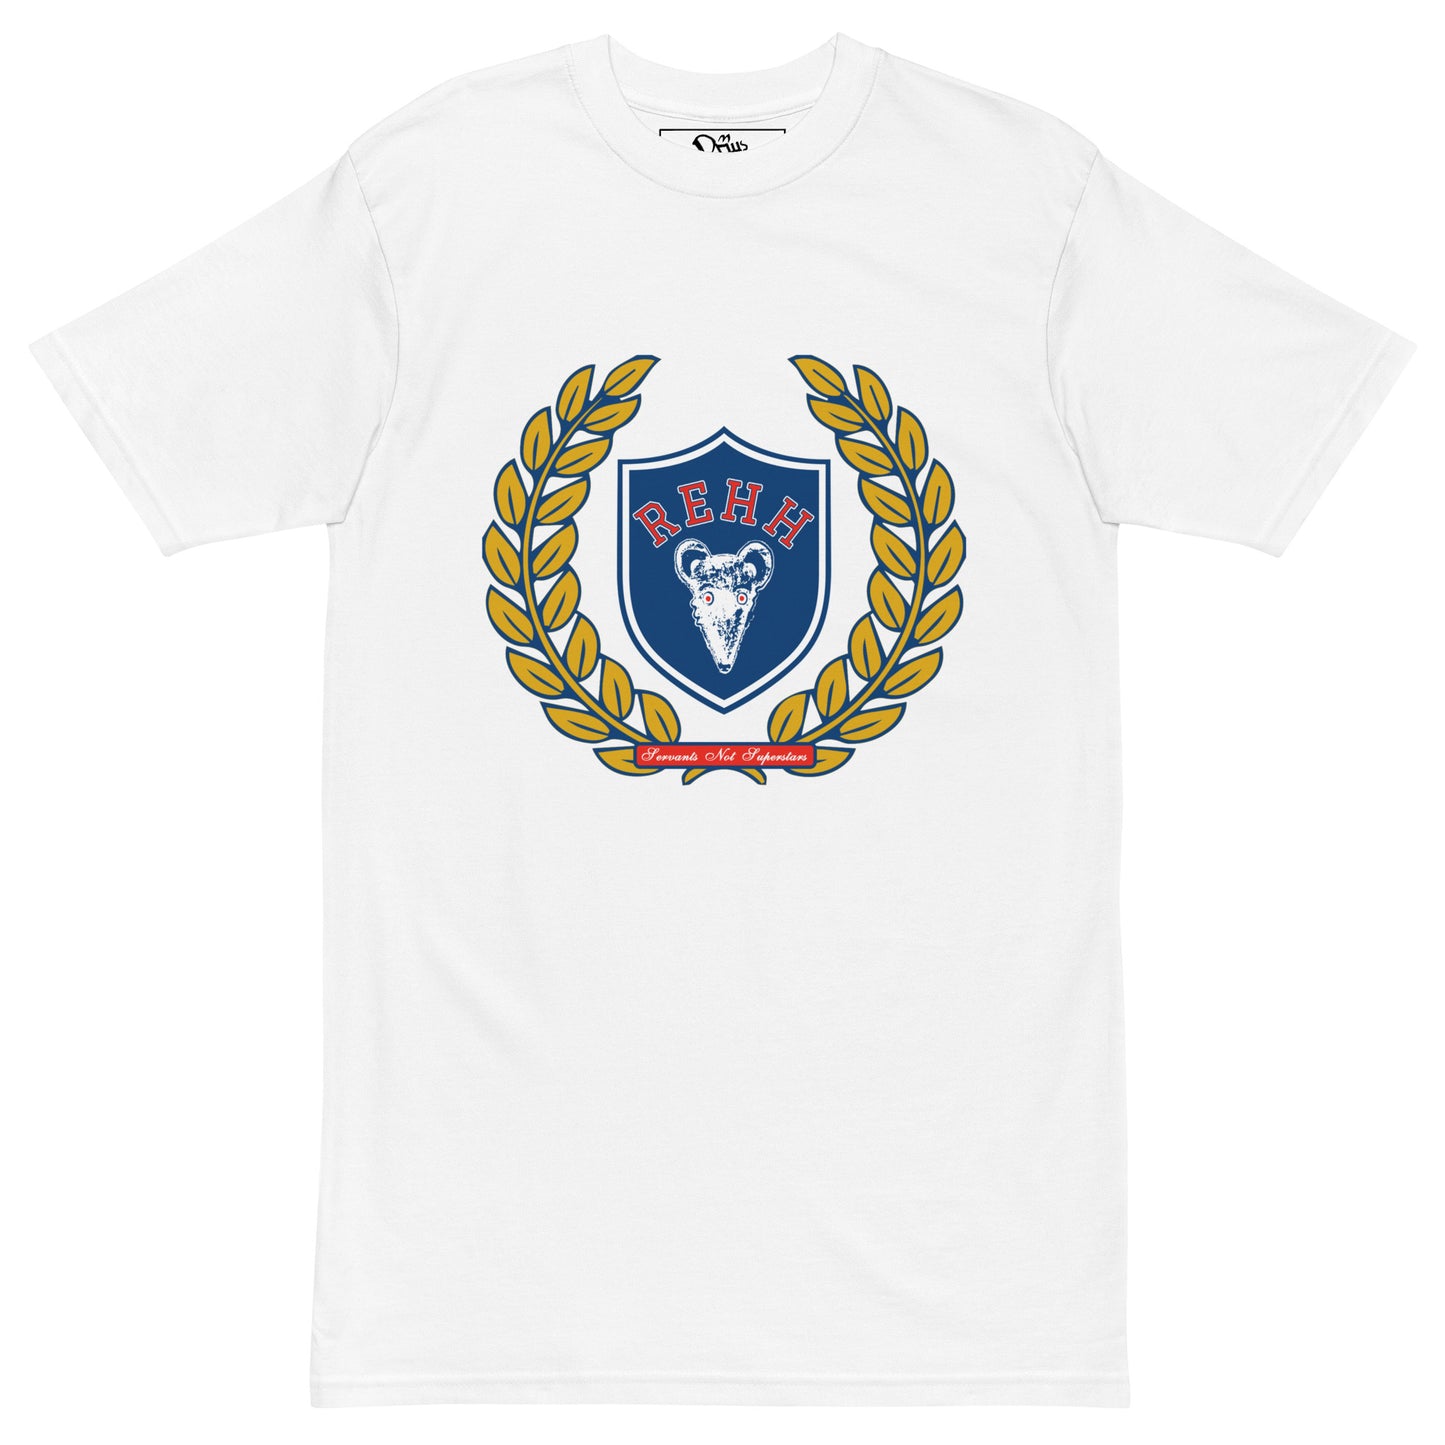 REHH x KD - "Saints" T-Shirt (White)